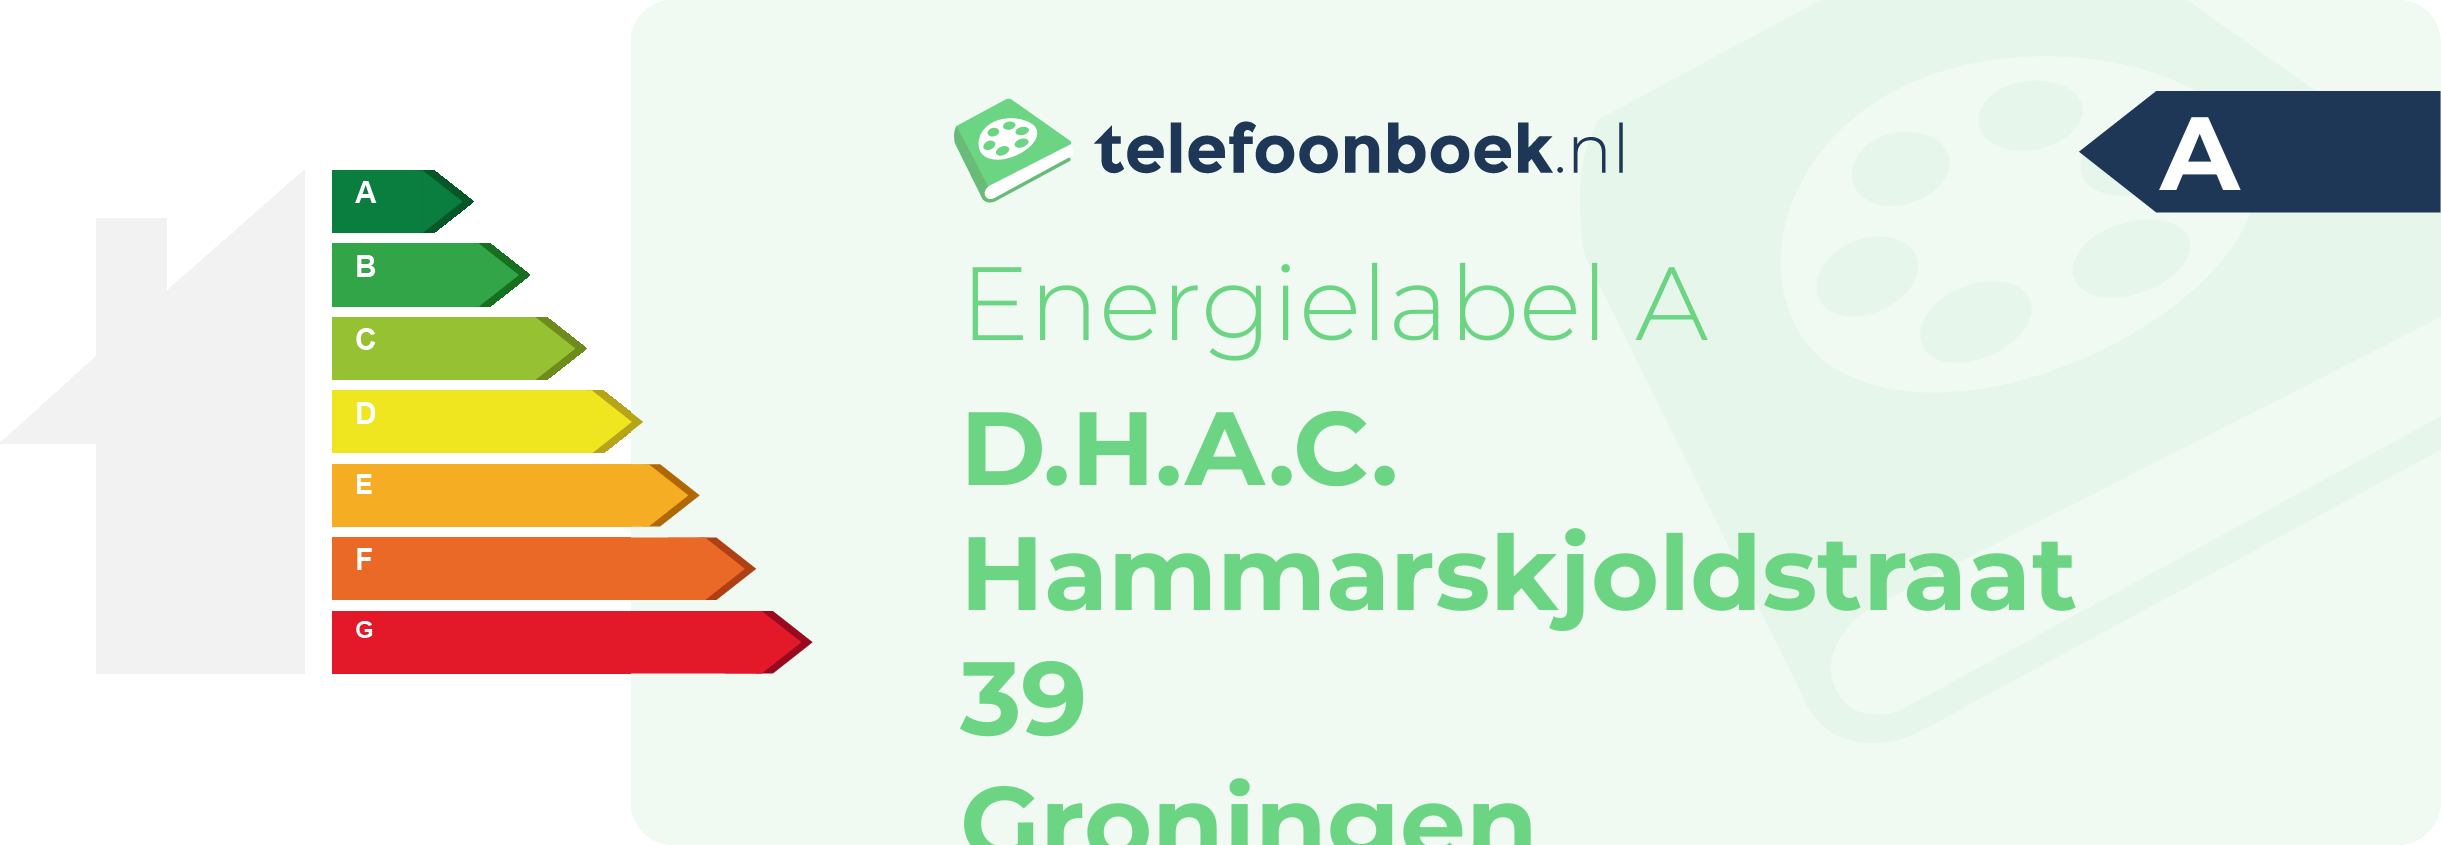 Energielabel D.H.A.C. Hammarskjoldstraat 39 Groningen